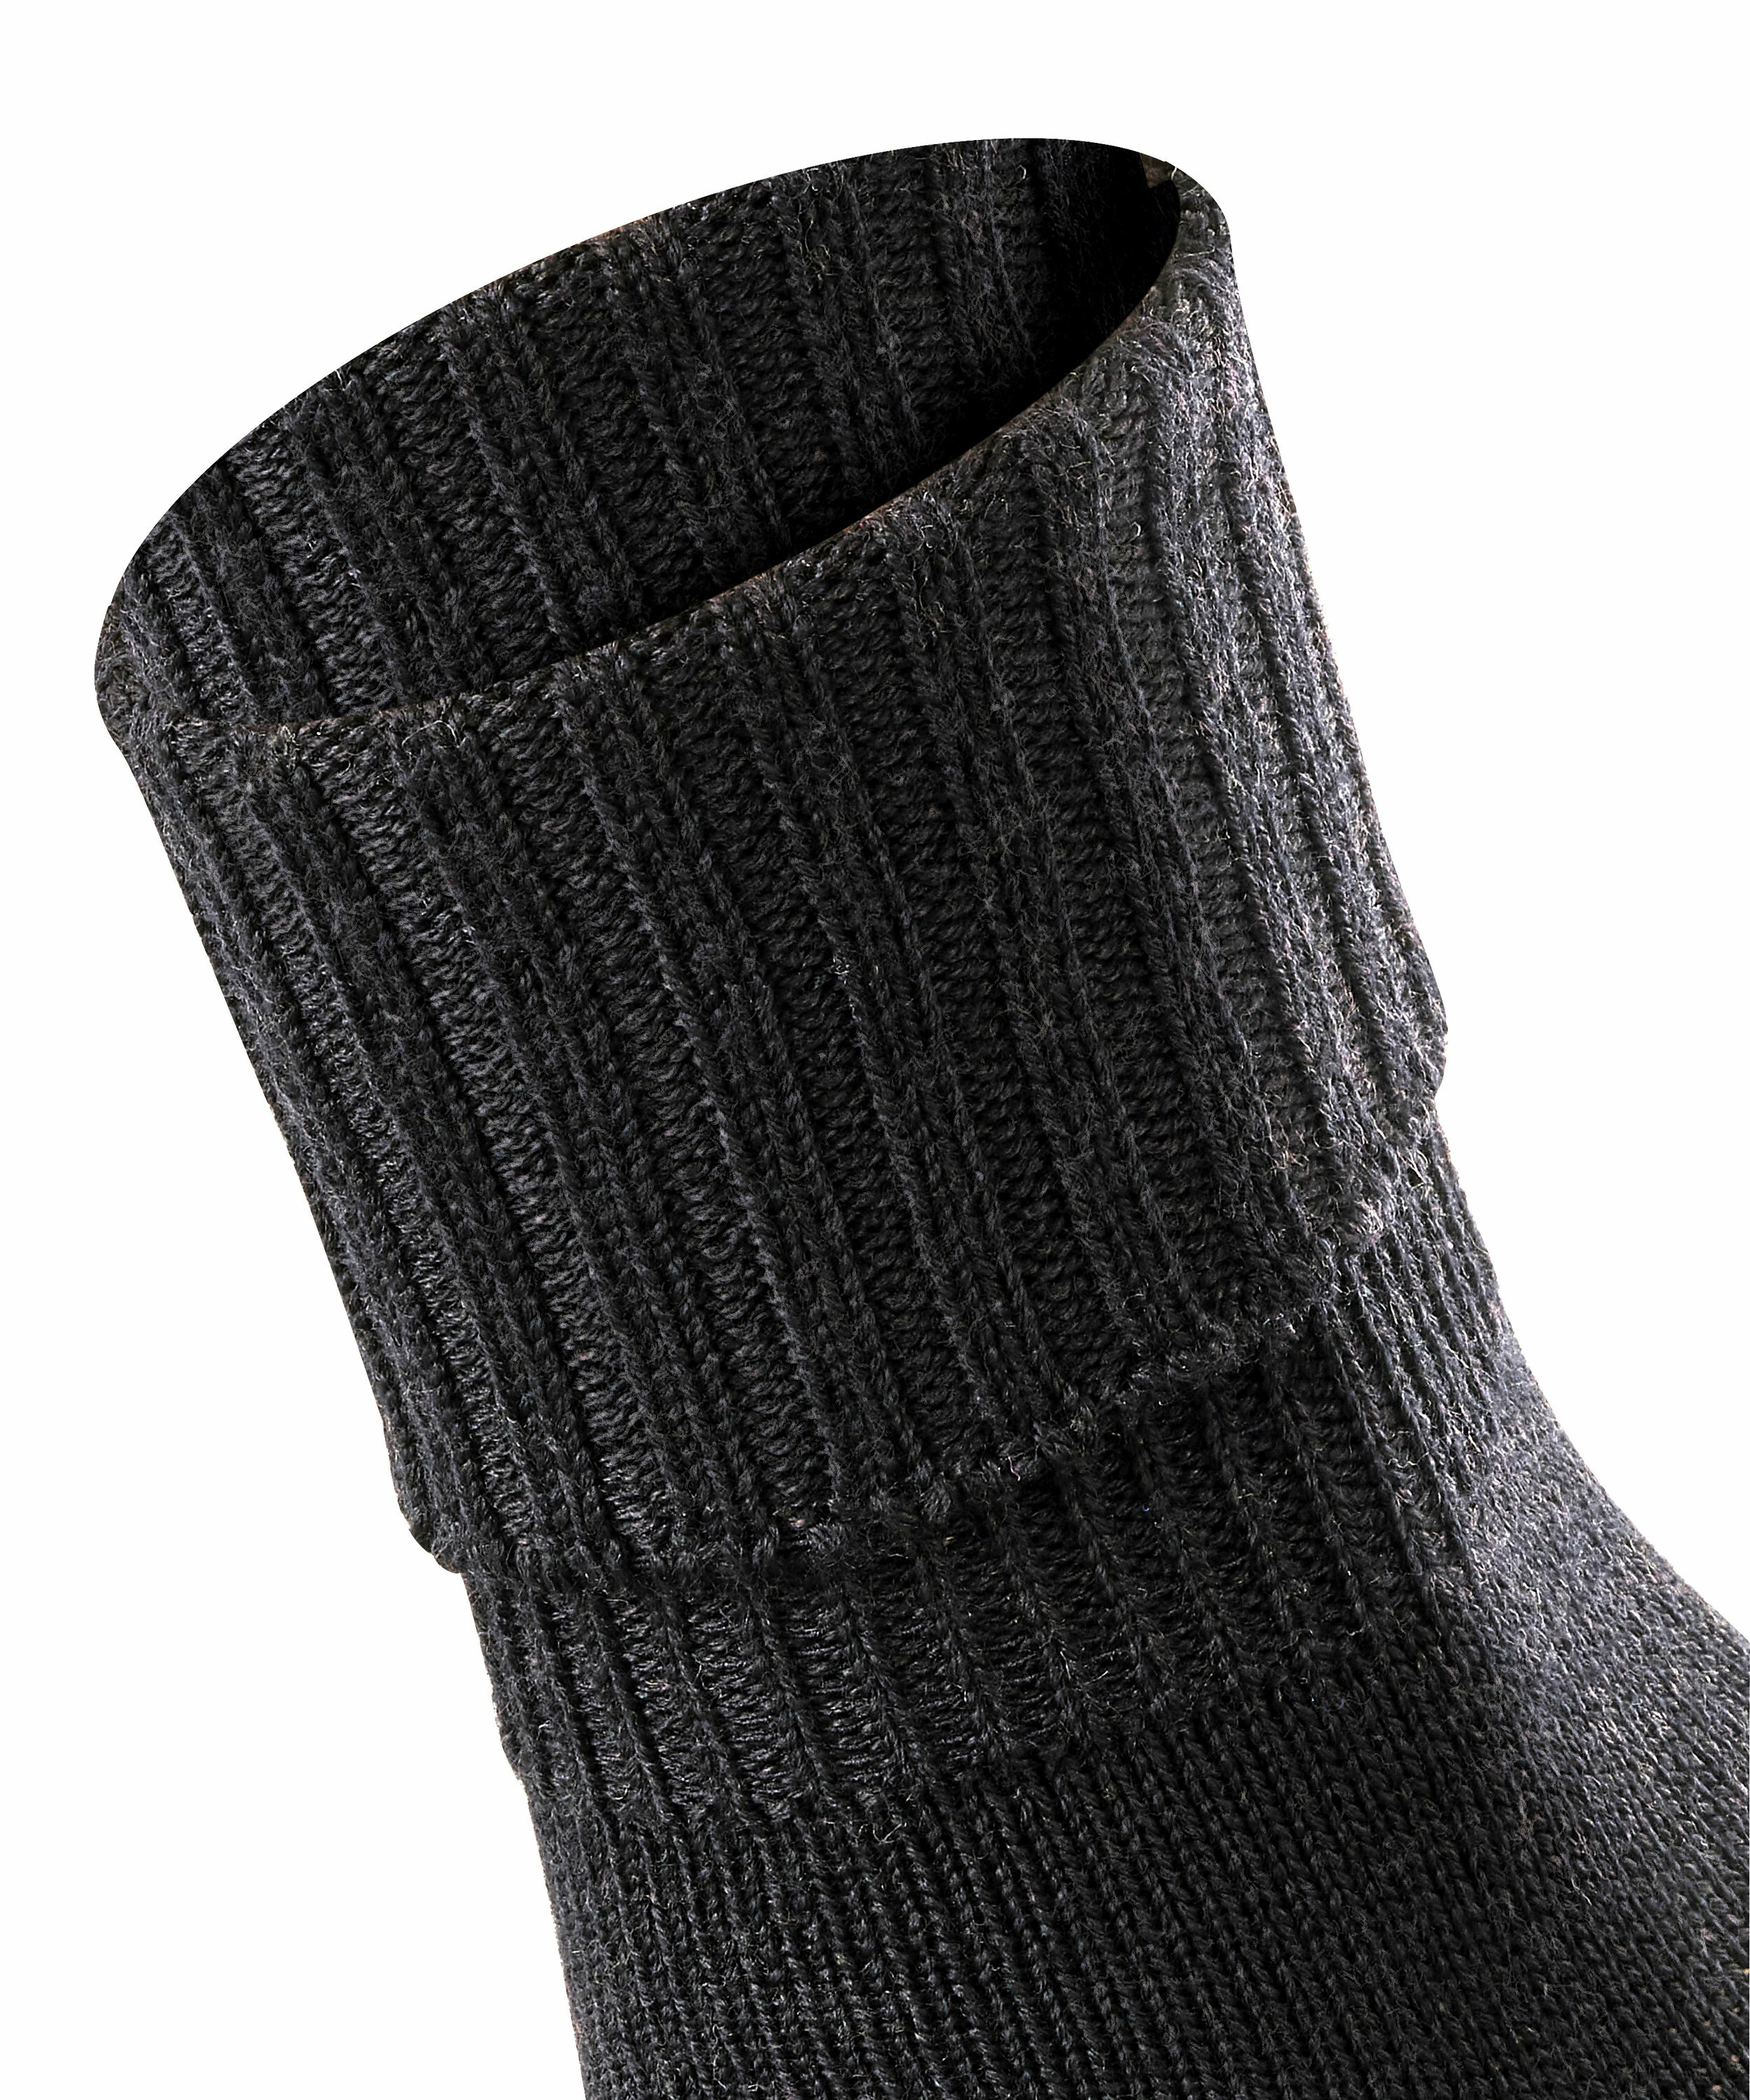 Woll-Socke "Striggings Rib" mit Umschlag